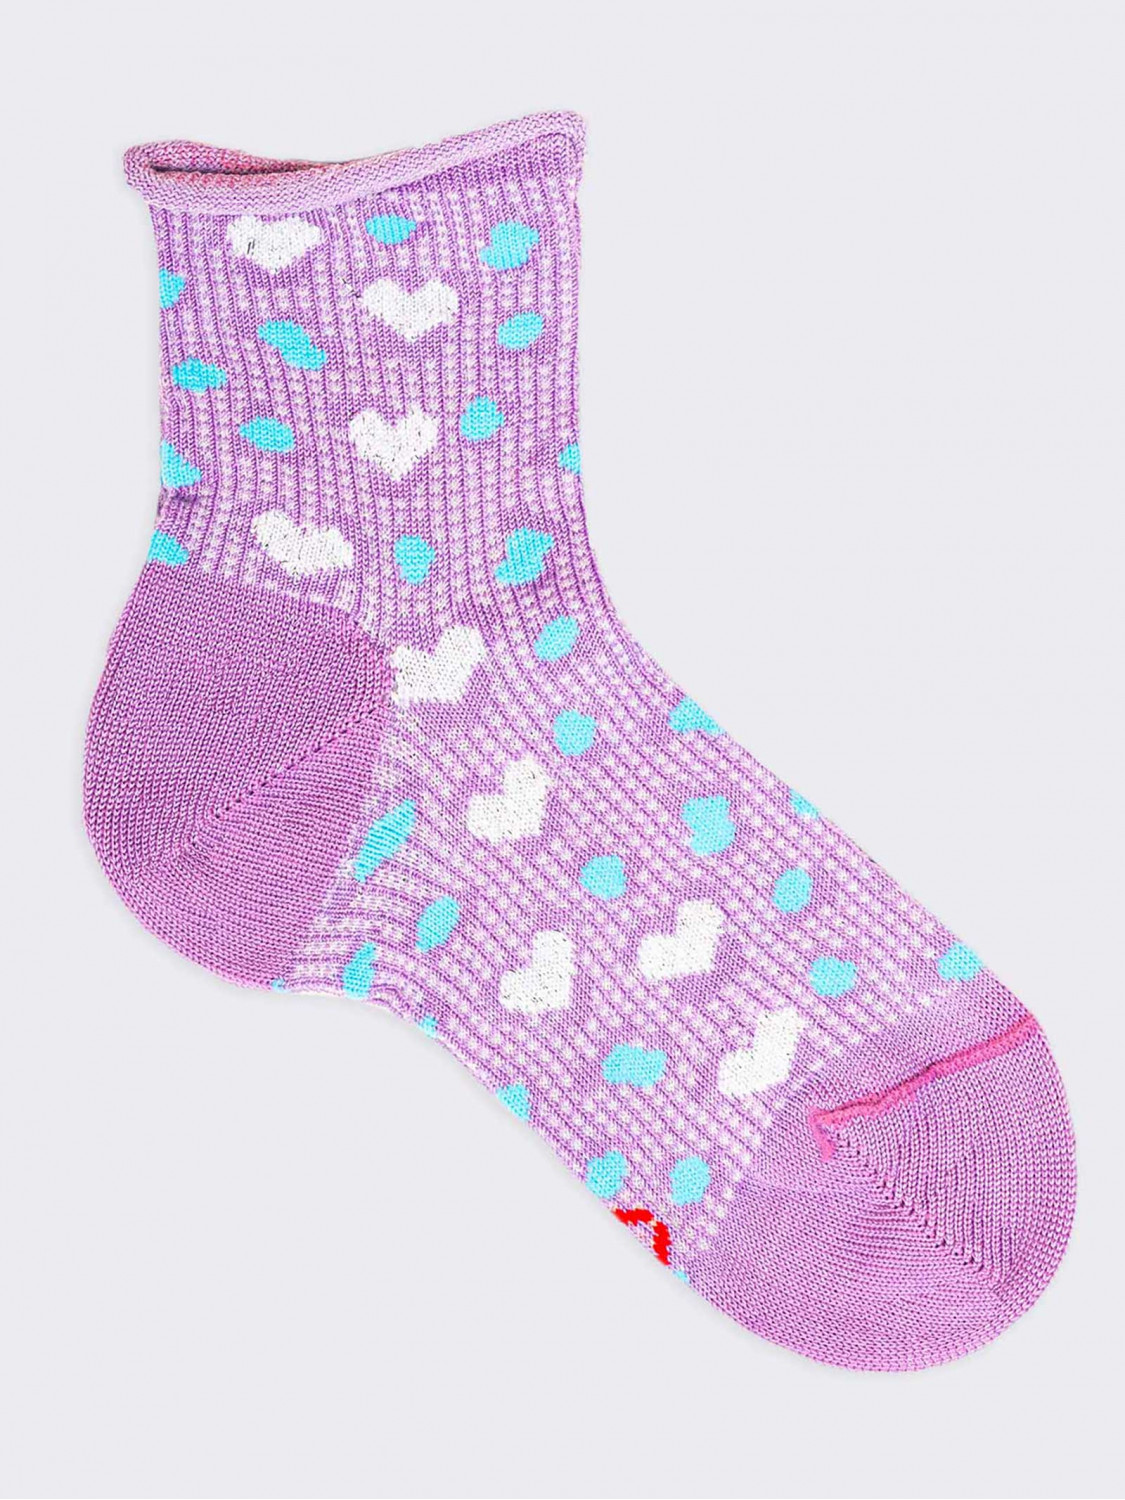 Kurze Socken in Herzform für Mädchen aus kühler Bio-Baumwolle